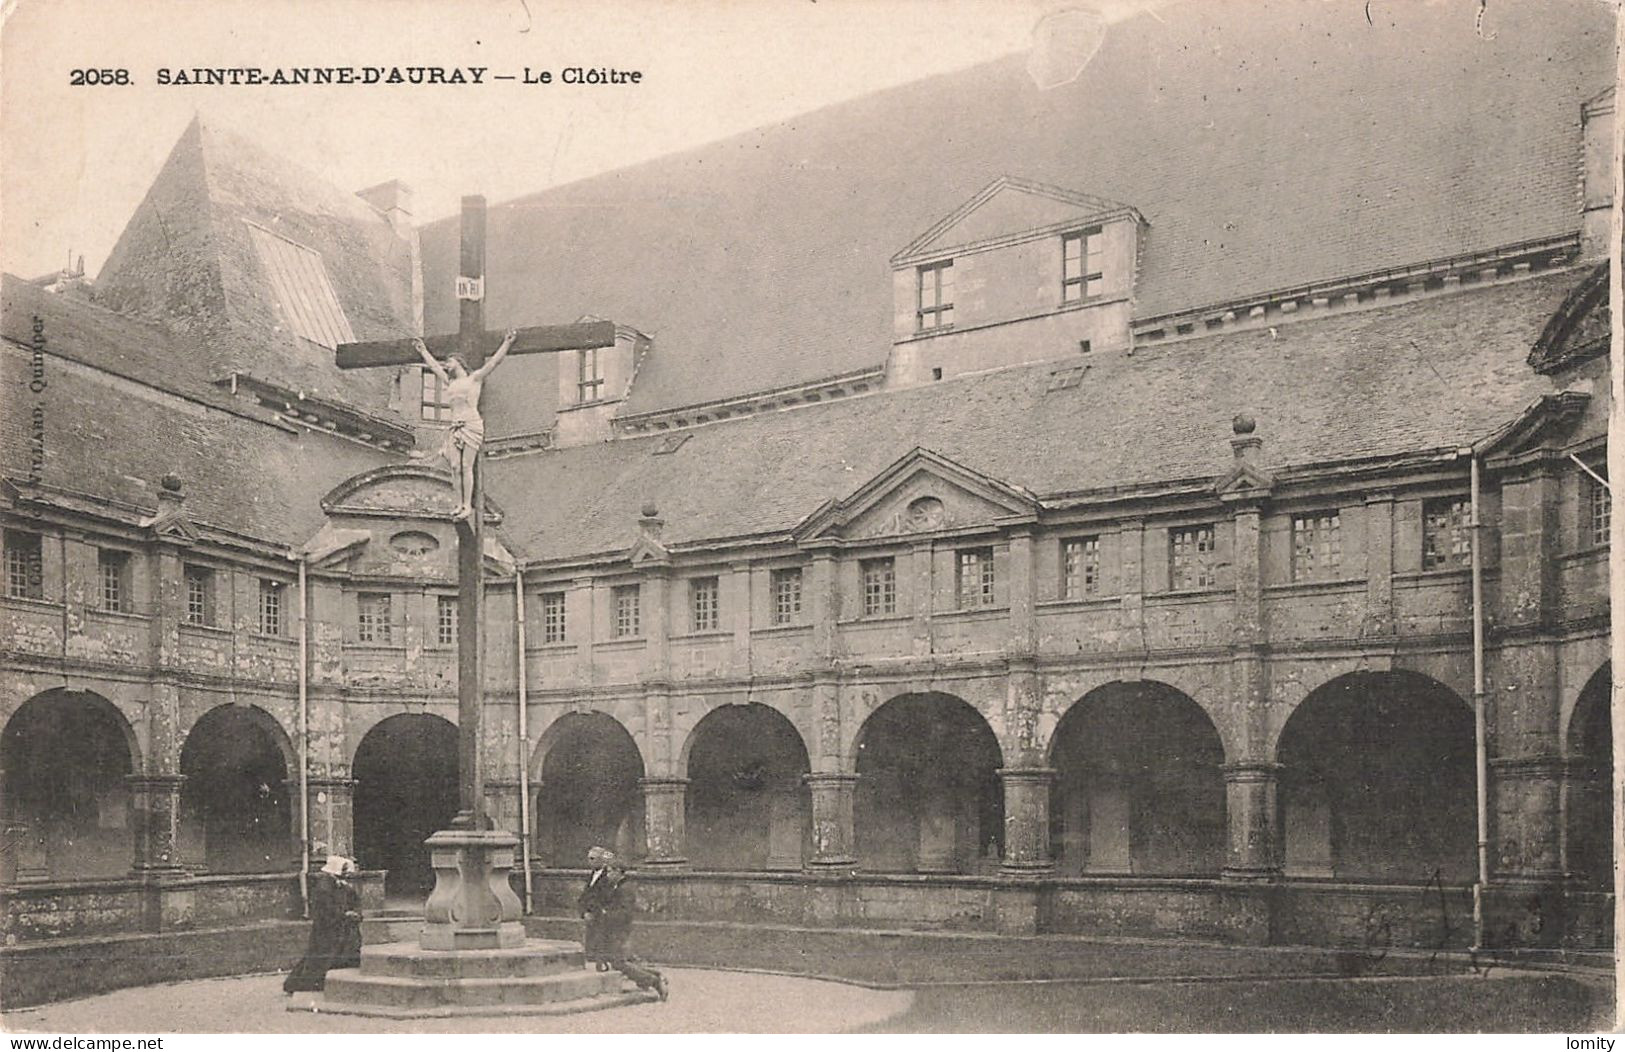 Destockage lot de 20 cartes postales CPA du Morbihan Carnac Saint anne d' Auray ile aux Moines Damgan Lorient